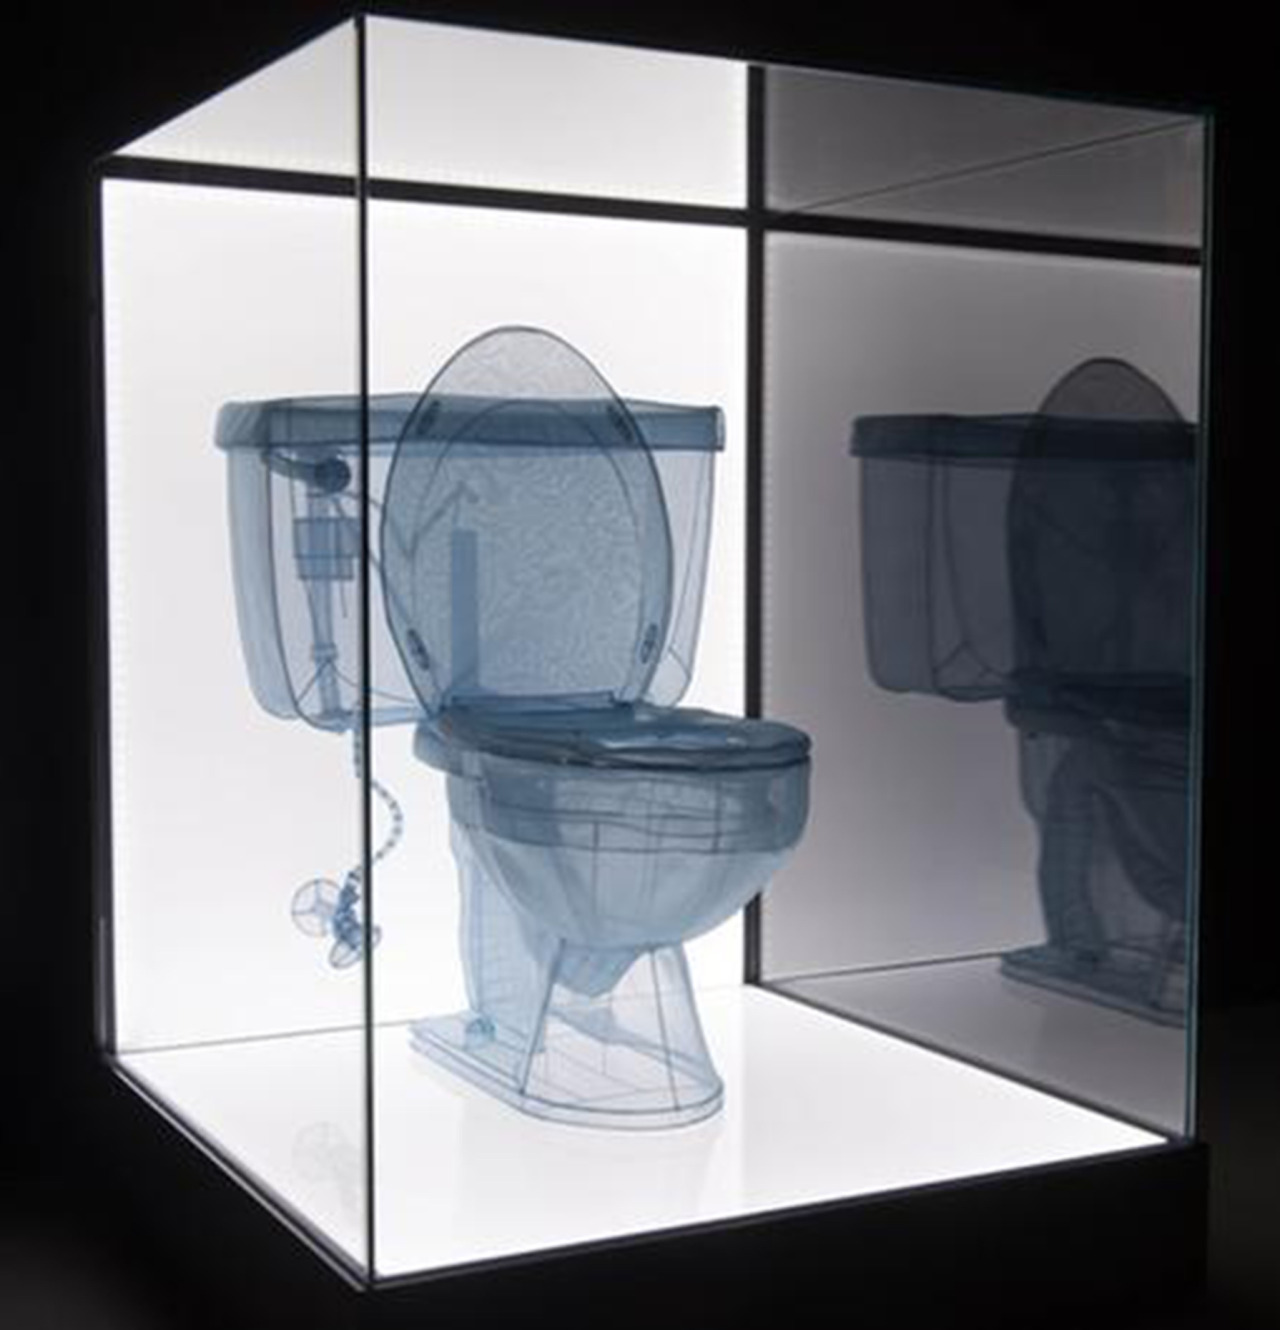 do-ho-suh-moca exhibit-toilet